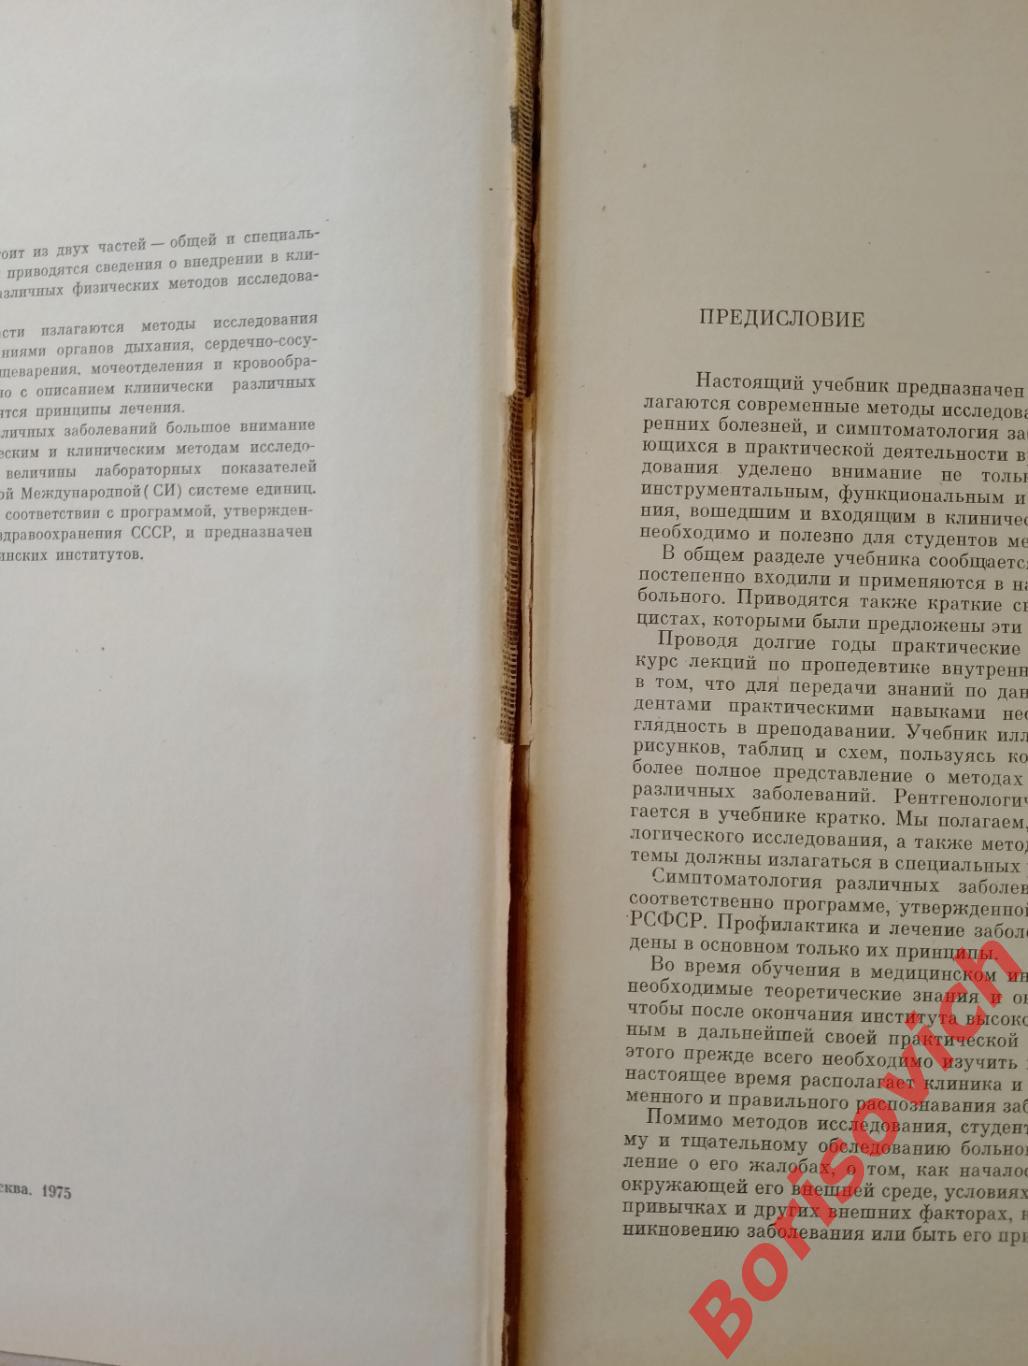 А. А. Шелагуров ПРОПЕДЕВТИКА ВНУТРЕННИХ БОЛЕЗНЕЙ 1975 г 479 страниц 2